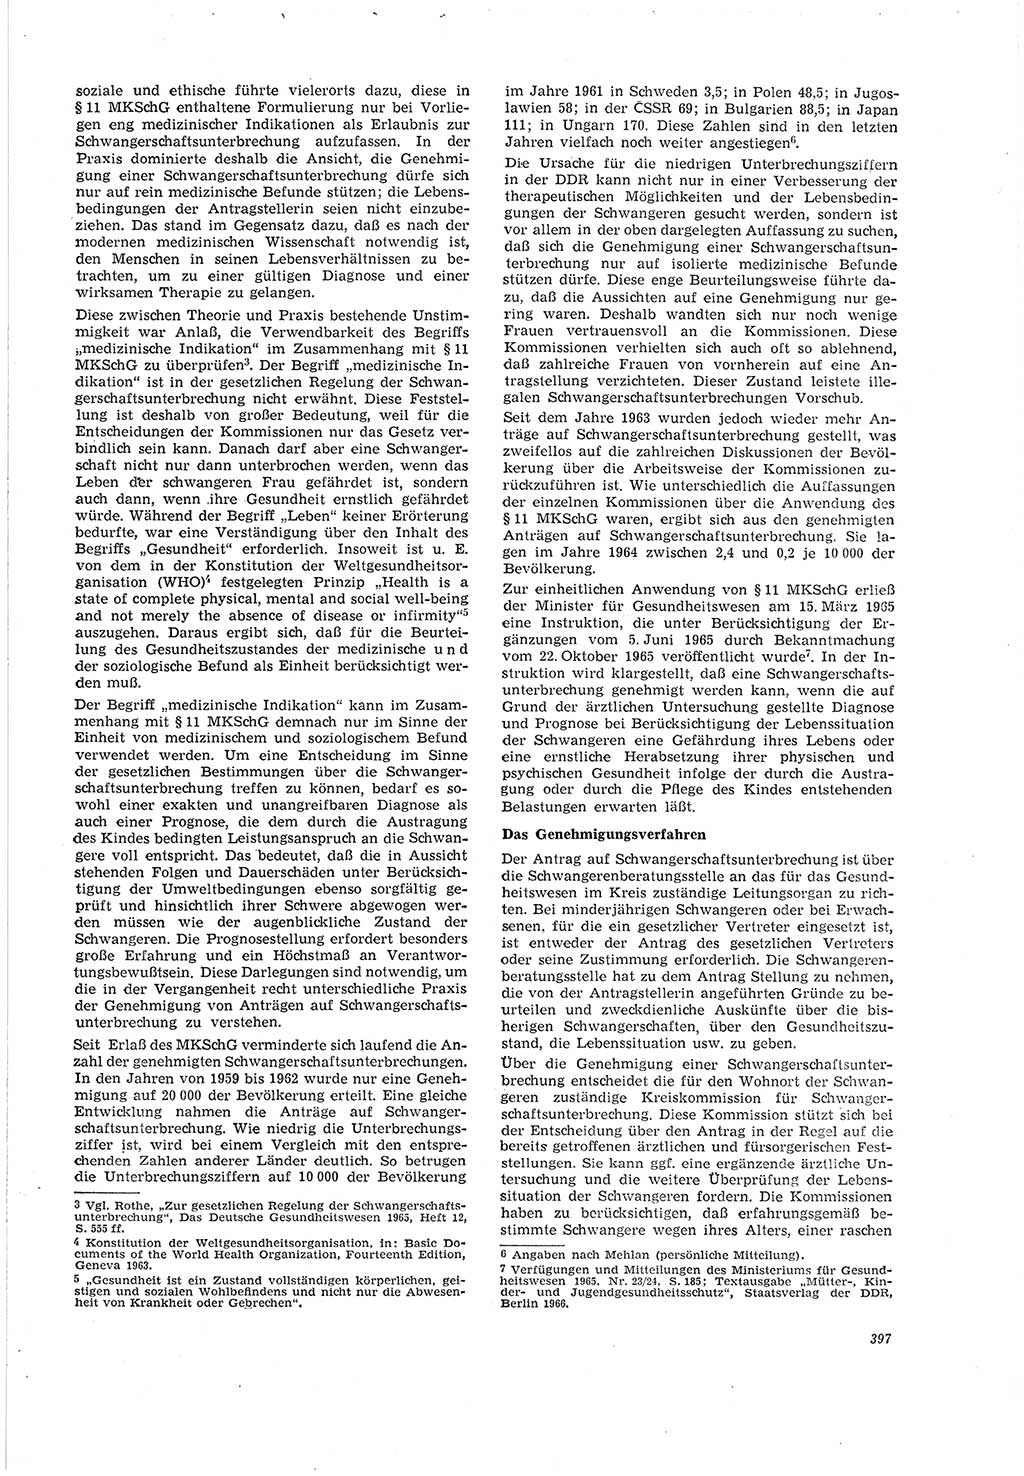 Neue Justiz (NJ), Zeitschrift für Recht und Rechtswissenschaft [Deutsche Demokratische Republik (DDR)], 20. Jahrgang 1966, Seite 397 (NJ DDR 1966, S. 397)